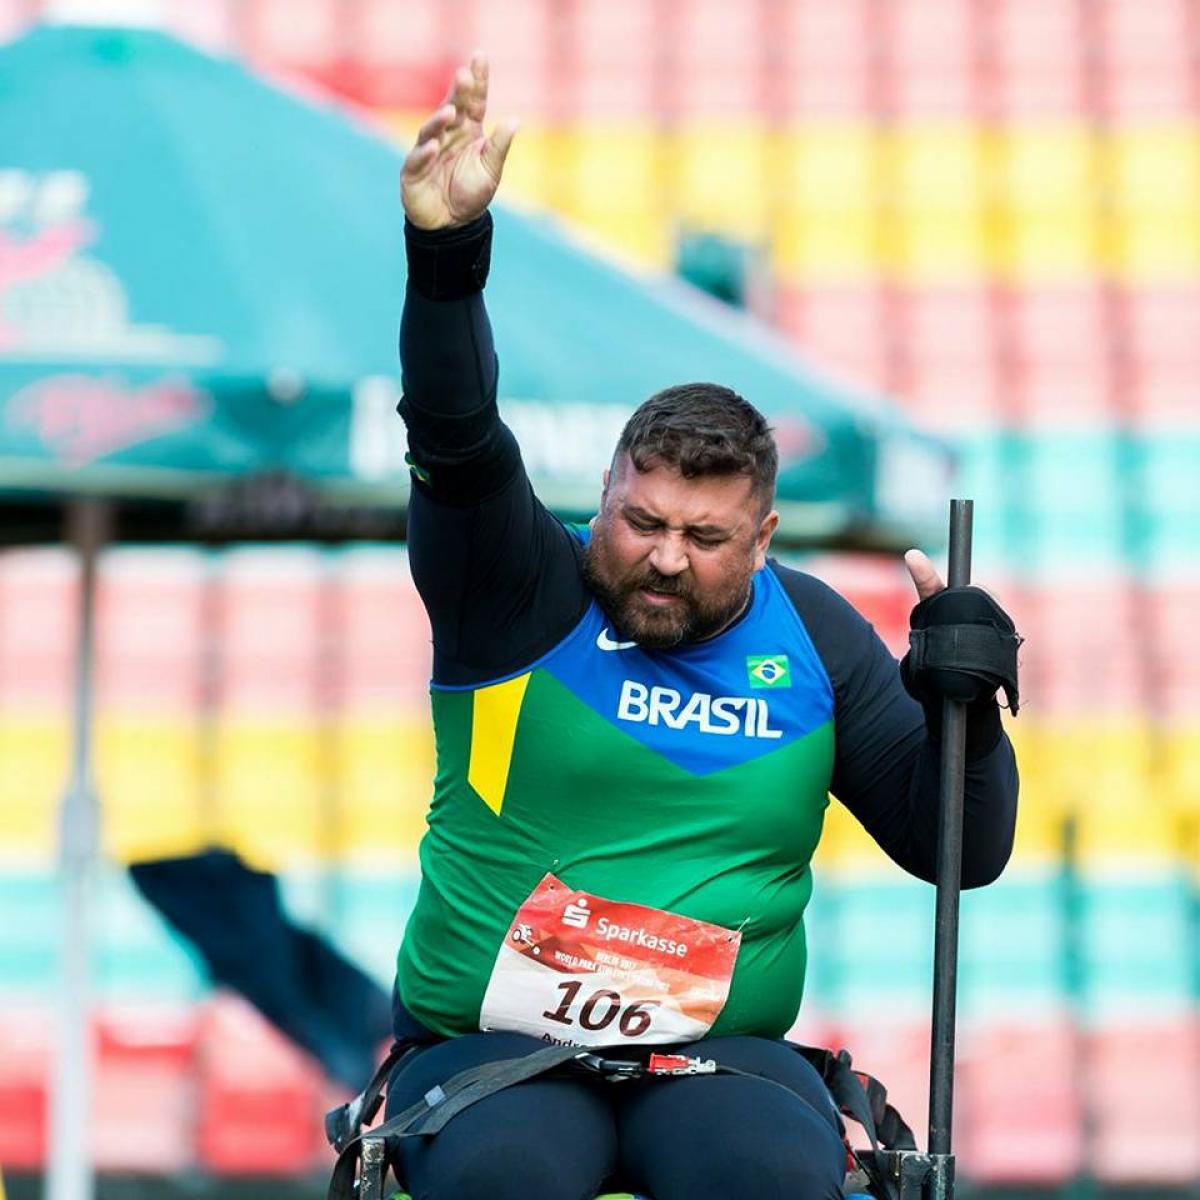 wheelchair athlete prepares to throw shot put